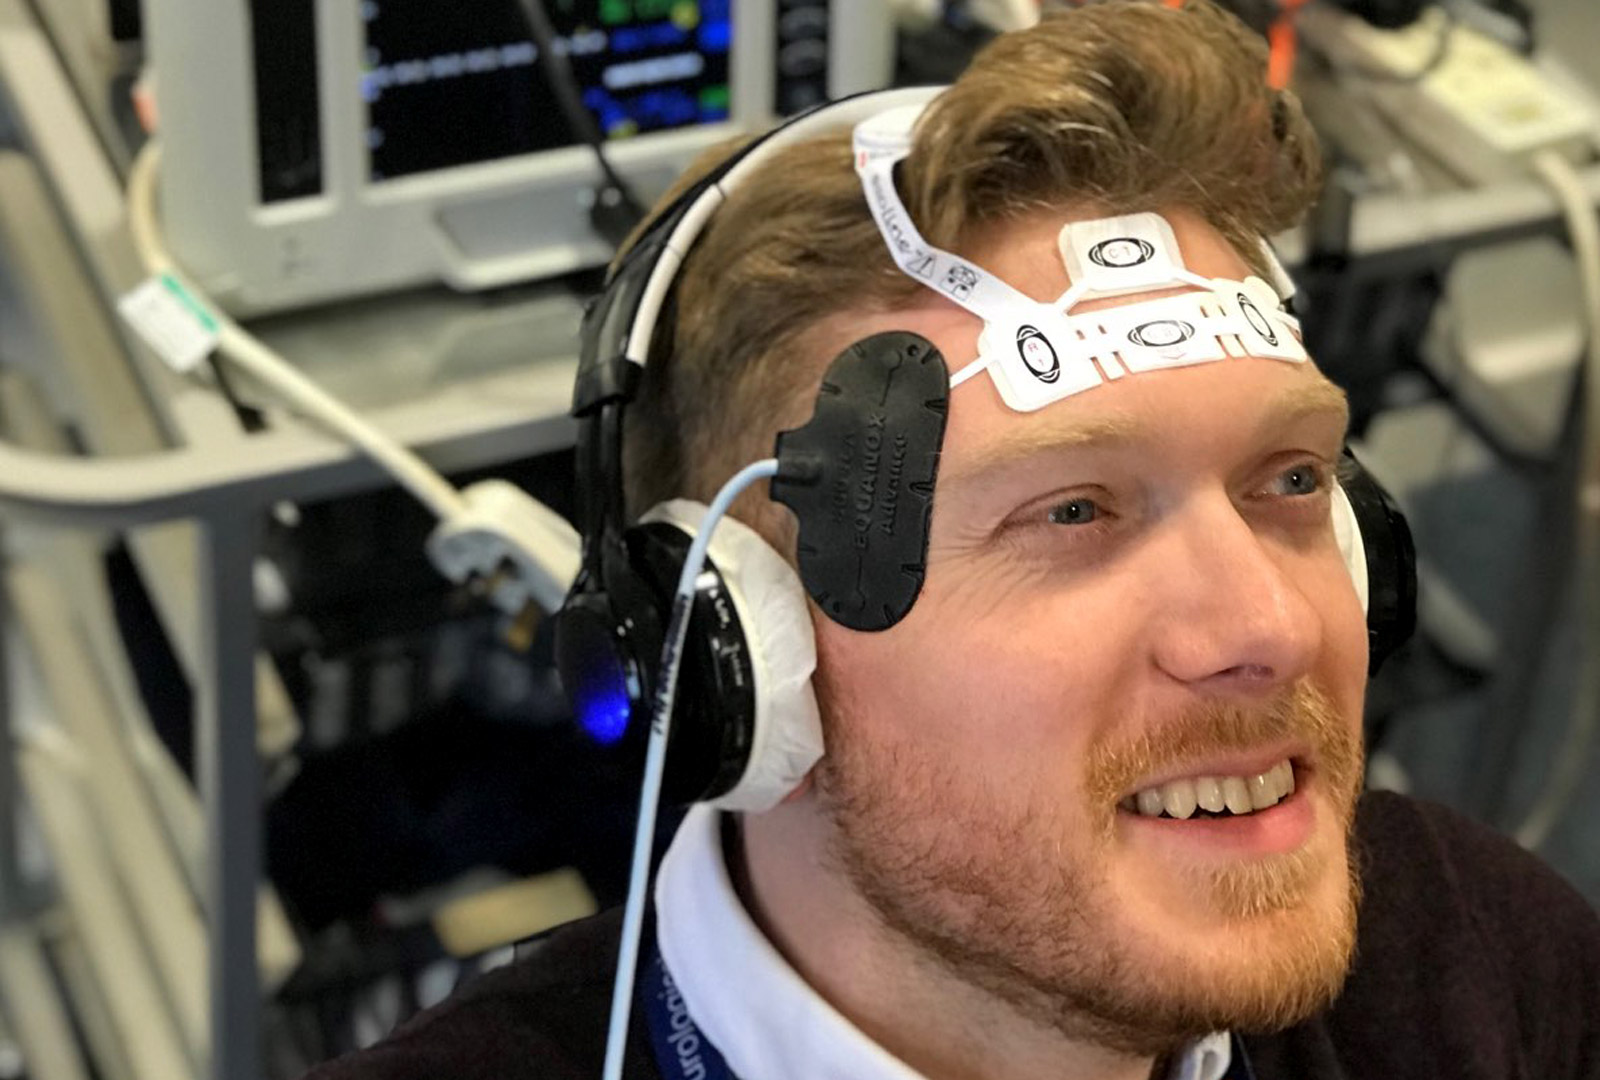  člen týmu v Anglii demonstruje zařízení pro monitorování mozku